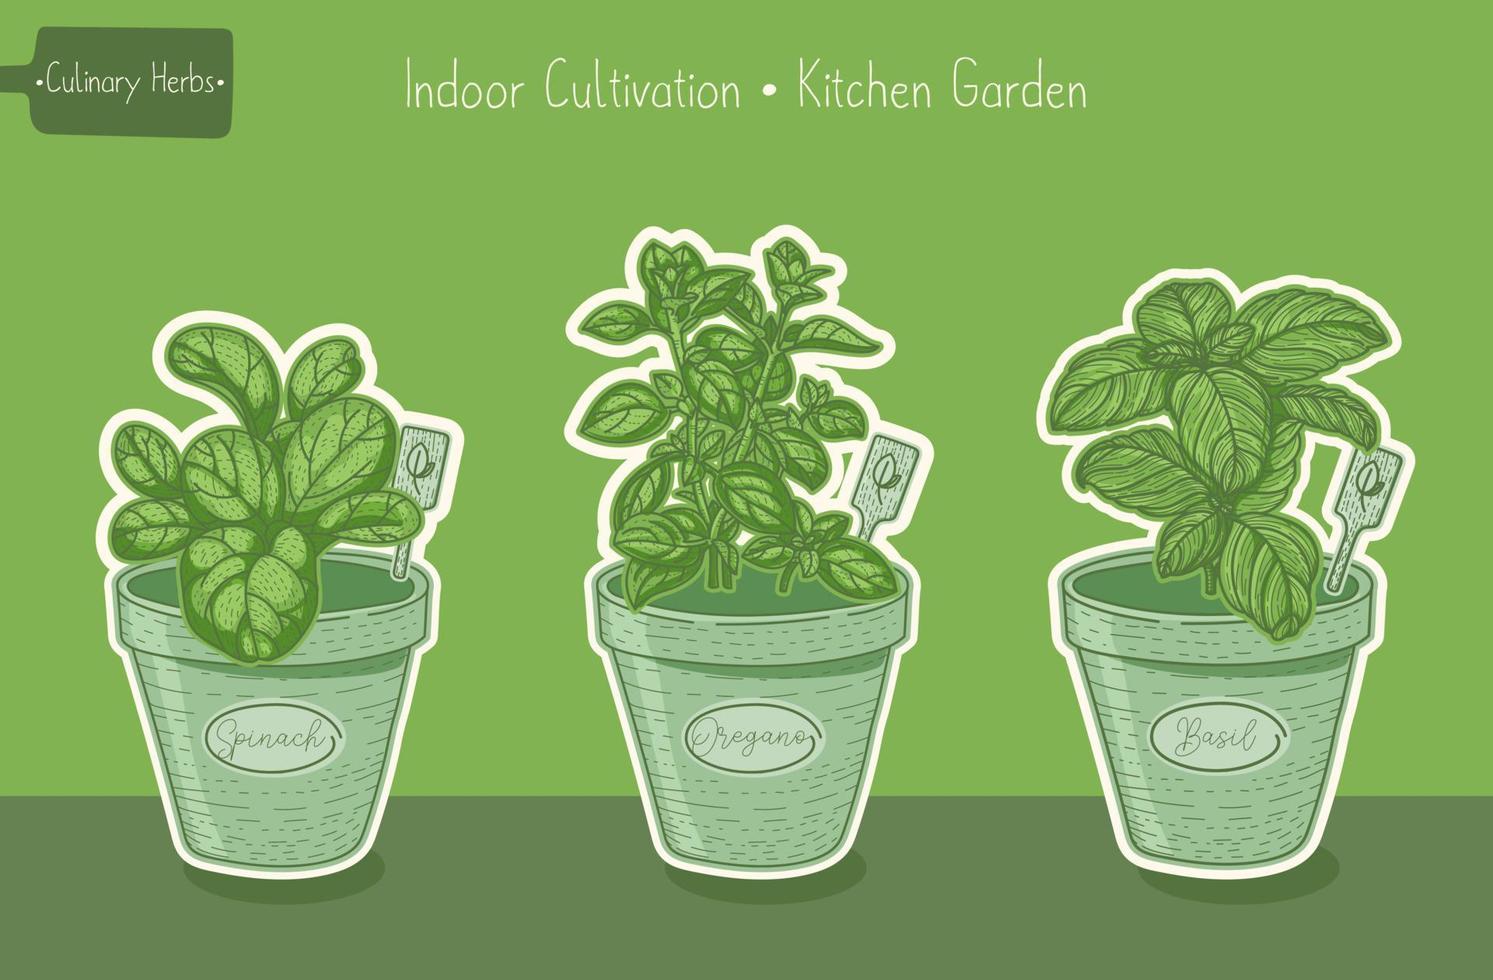 matväxter för köksträdgård, basilika och spenat och oregano grön handritad illustration vektor